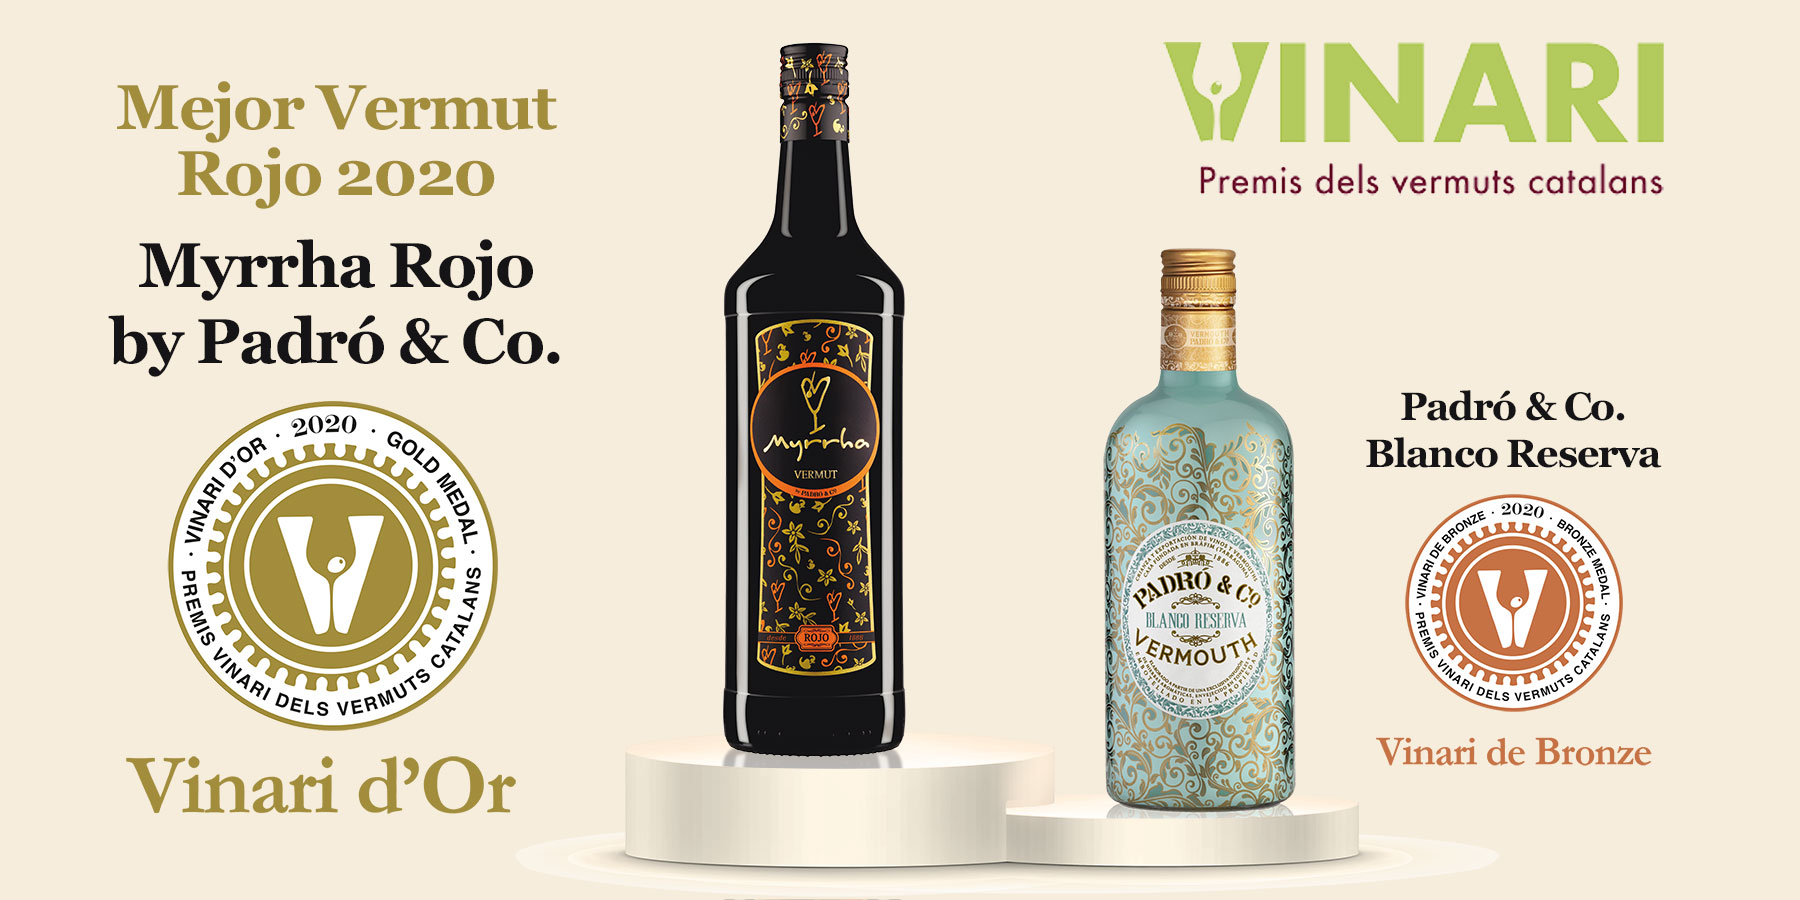 Best Vermouth 2020